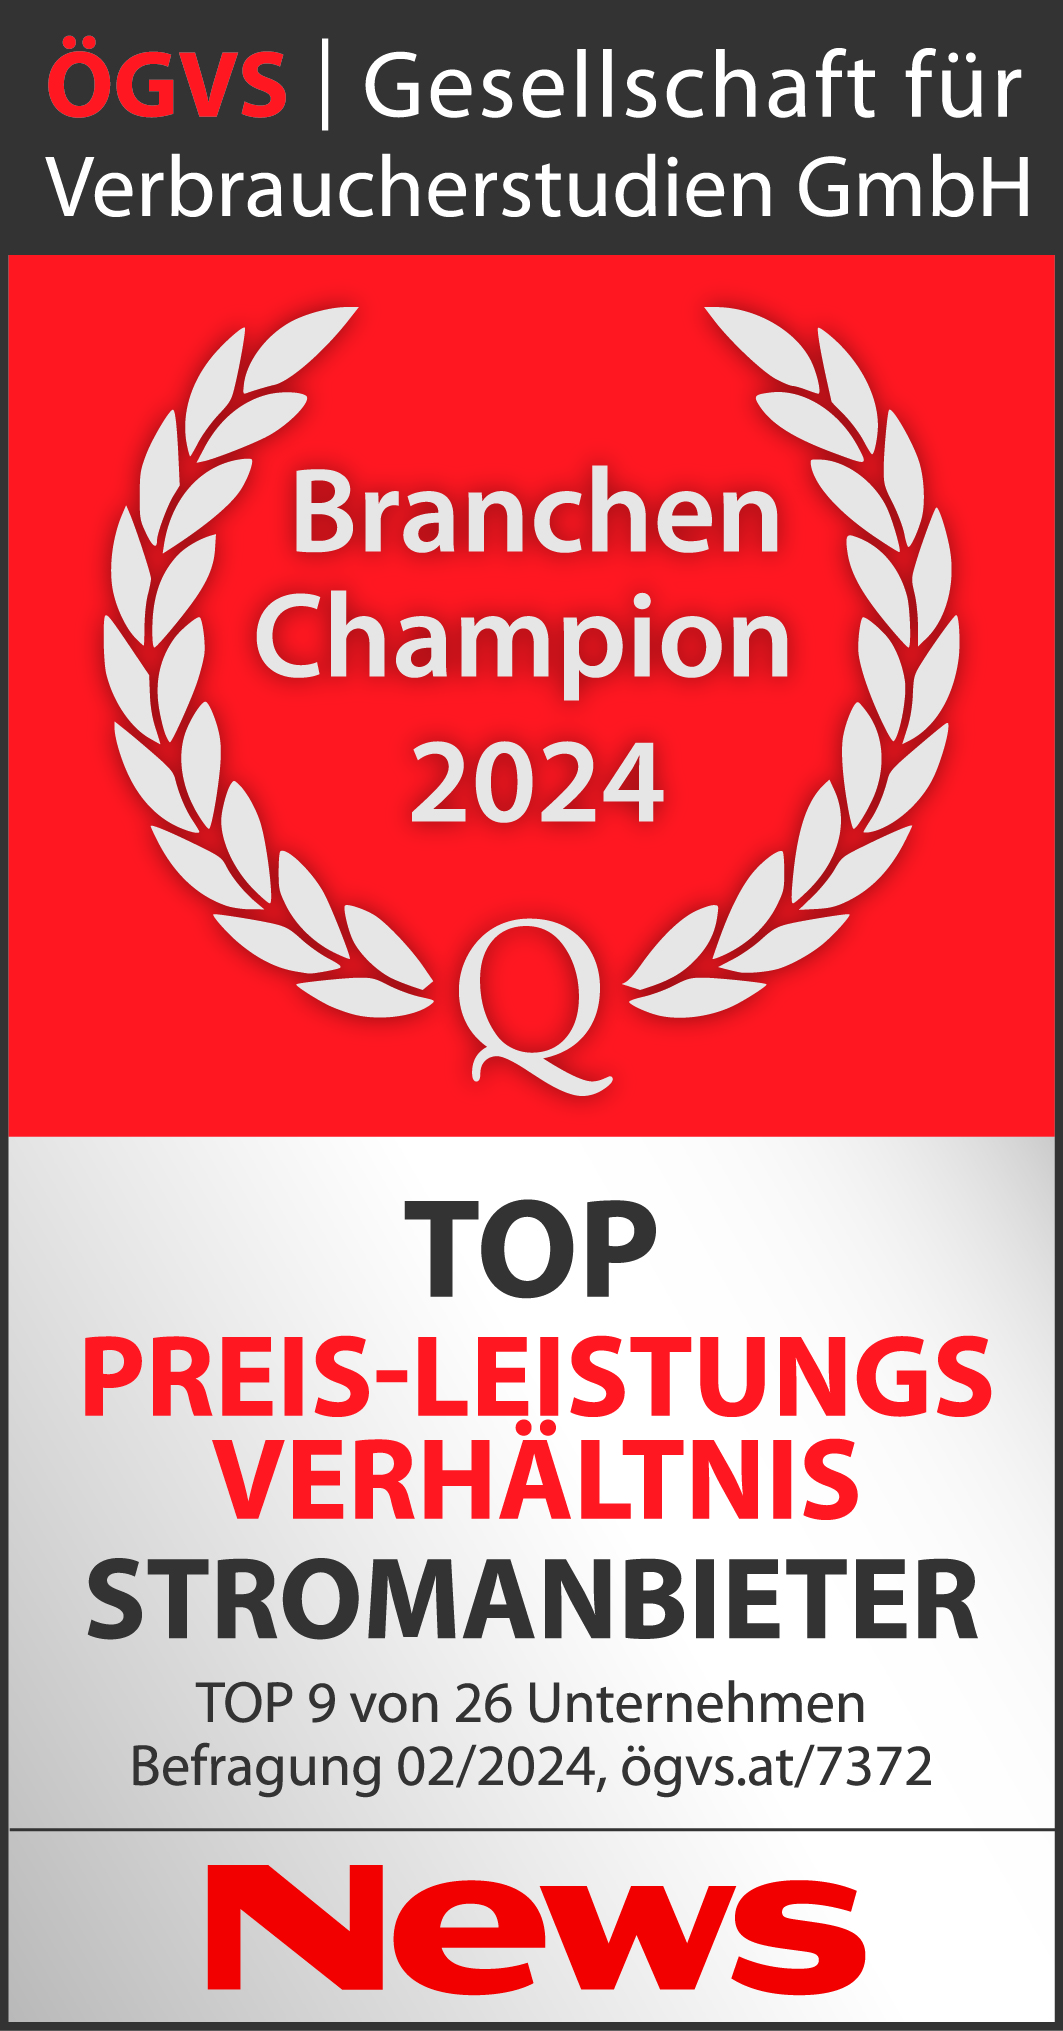 ÖGVS Branchen Champion Auszeichnung 2024: TOP Preis-Leistungsverhältnis Stromanbieter. Top 9 von 26 Unternehmen Befragung 02/2024 ögvs.at/7372